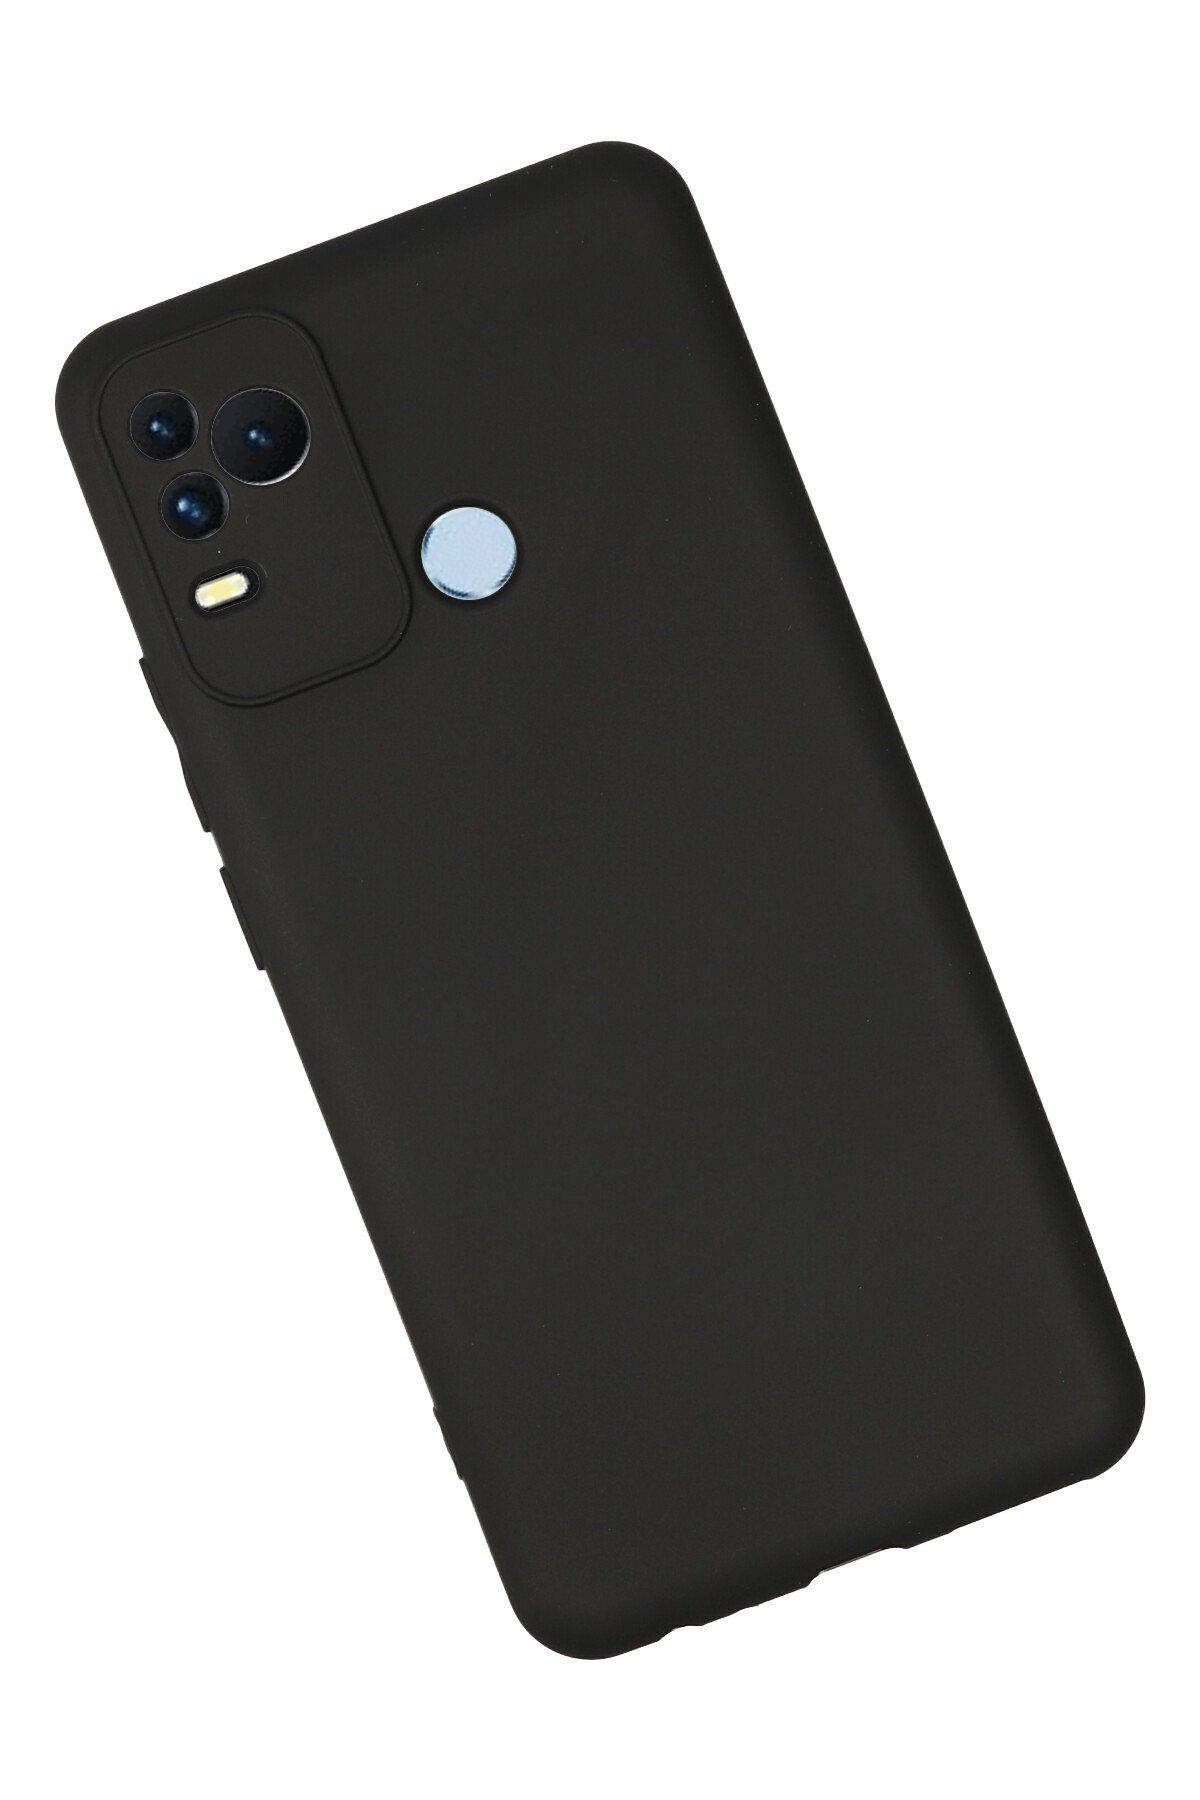 cepmoda Omix X400 Soft İnce Esnek Telefon Kılıfı - Siyah Renkli Slim Silikon Kapak